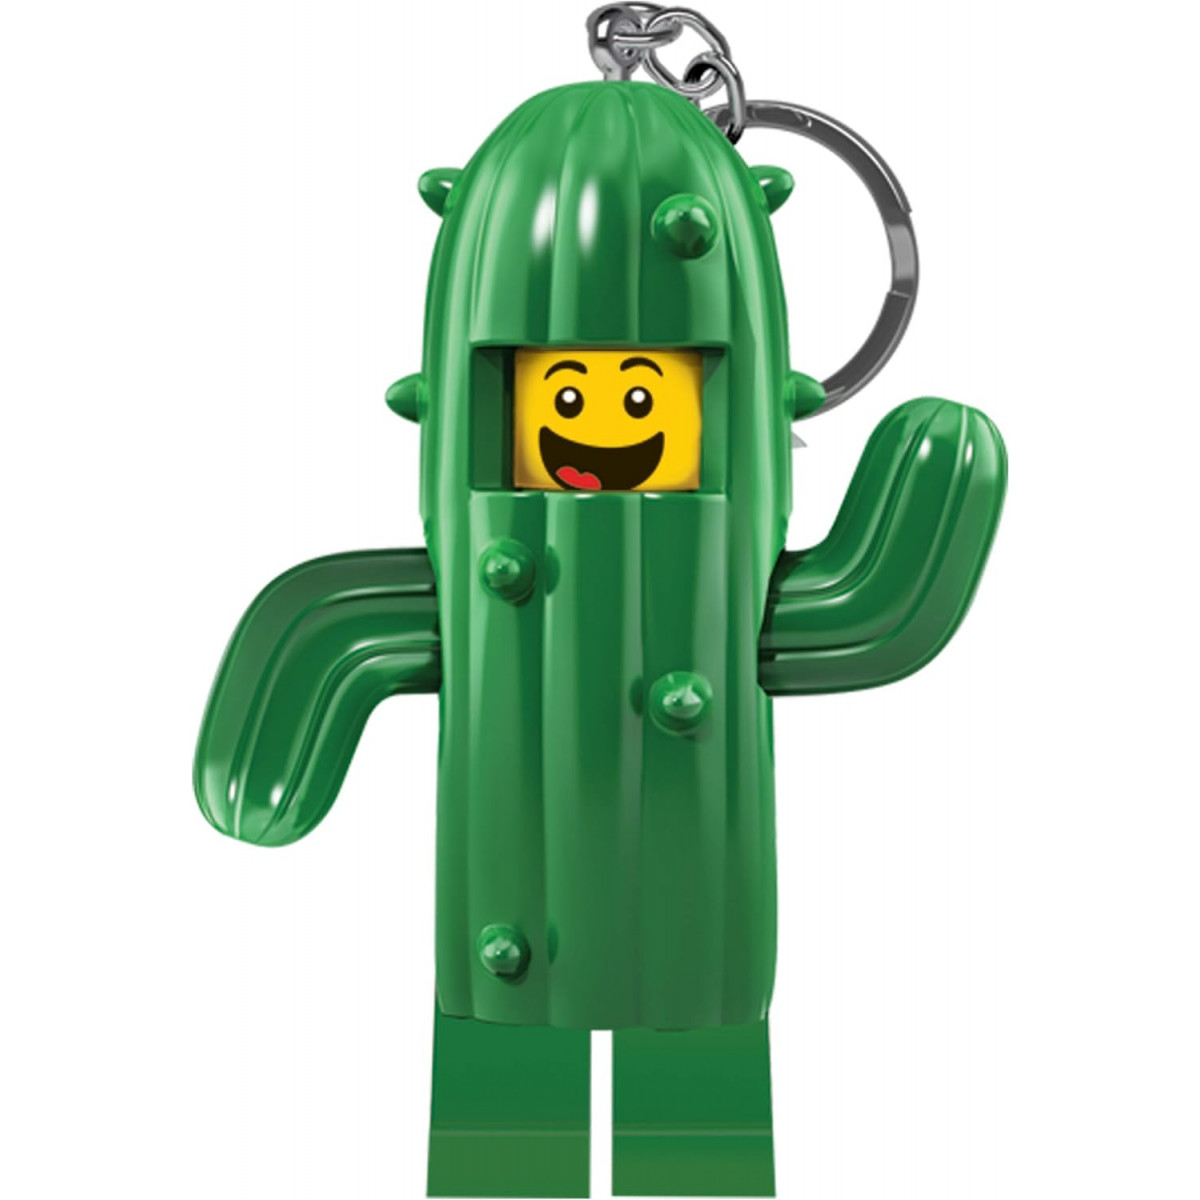 Lego LGL-KE157H - Cactus guy key light